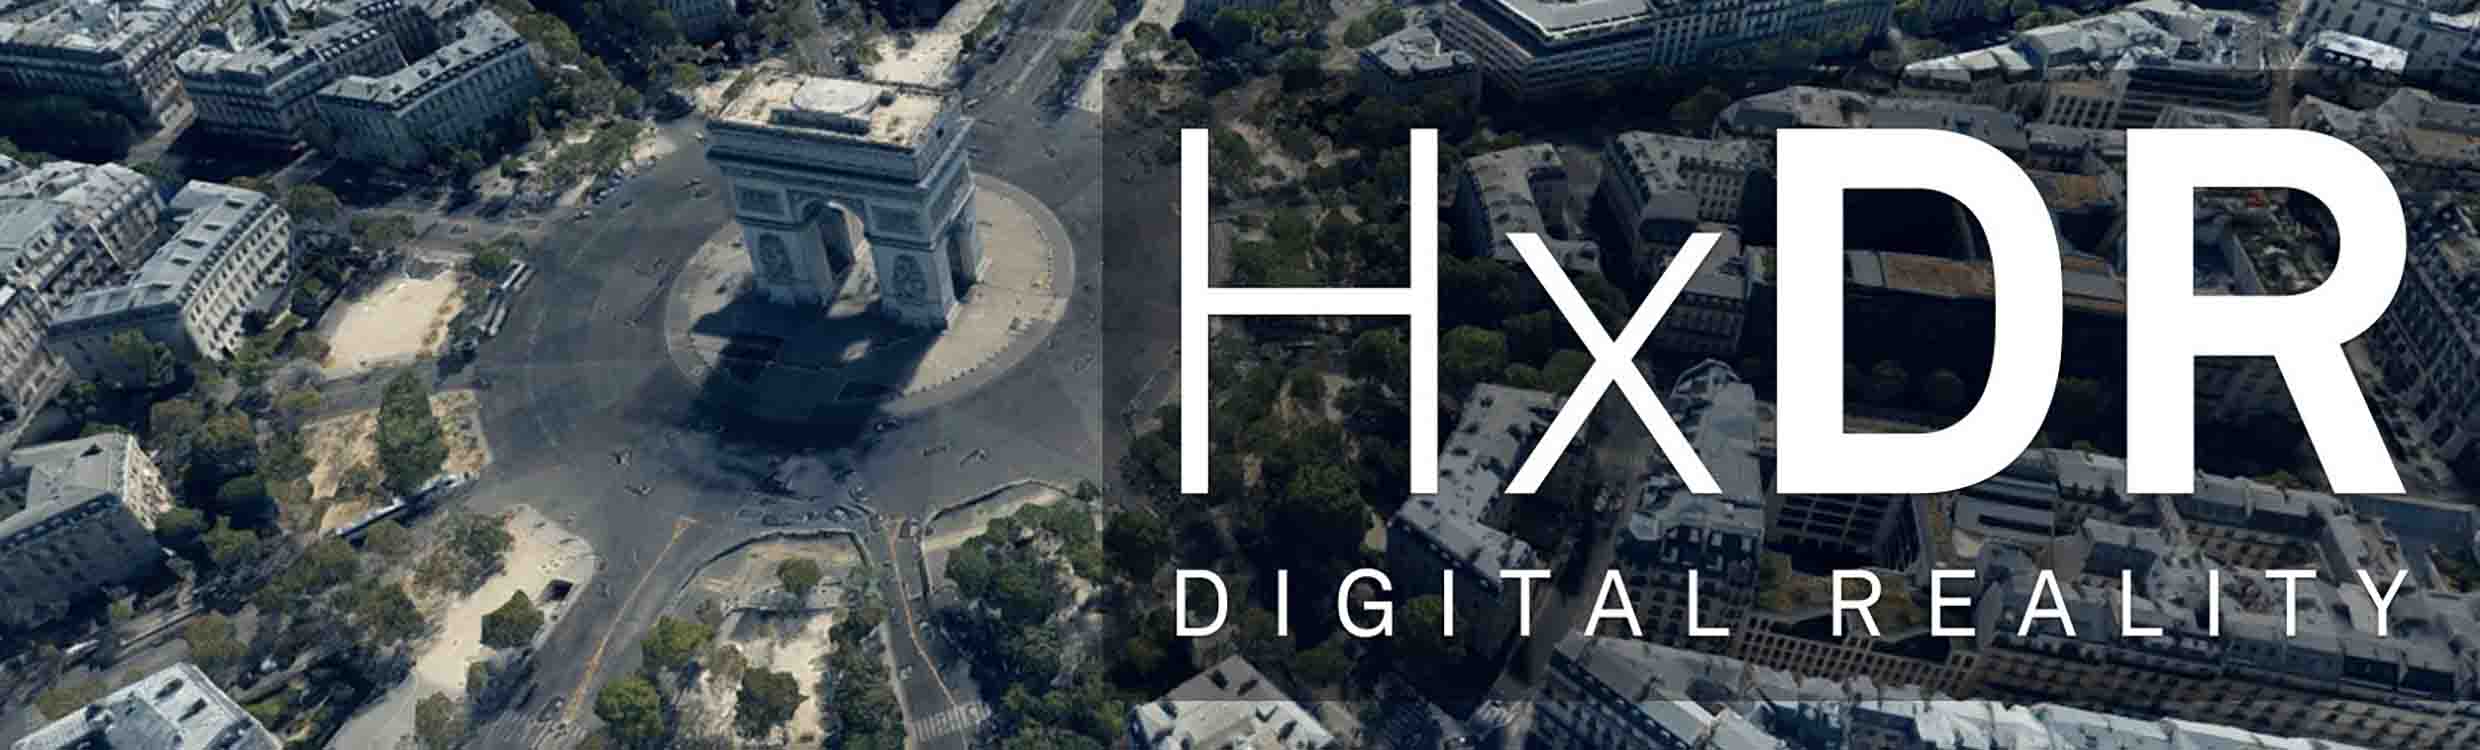 Vista aérea del Arco del Triunfo en París (Francia) con el texto «HxDR Digital Reality»